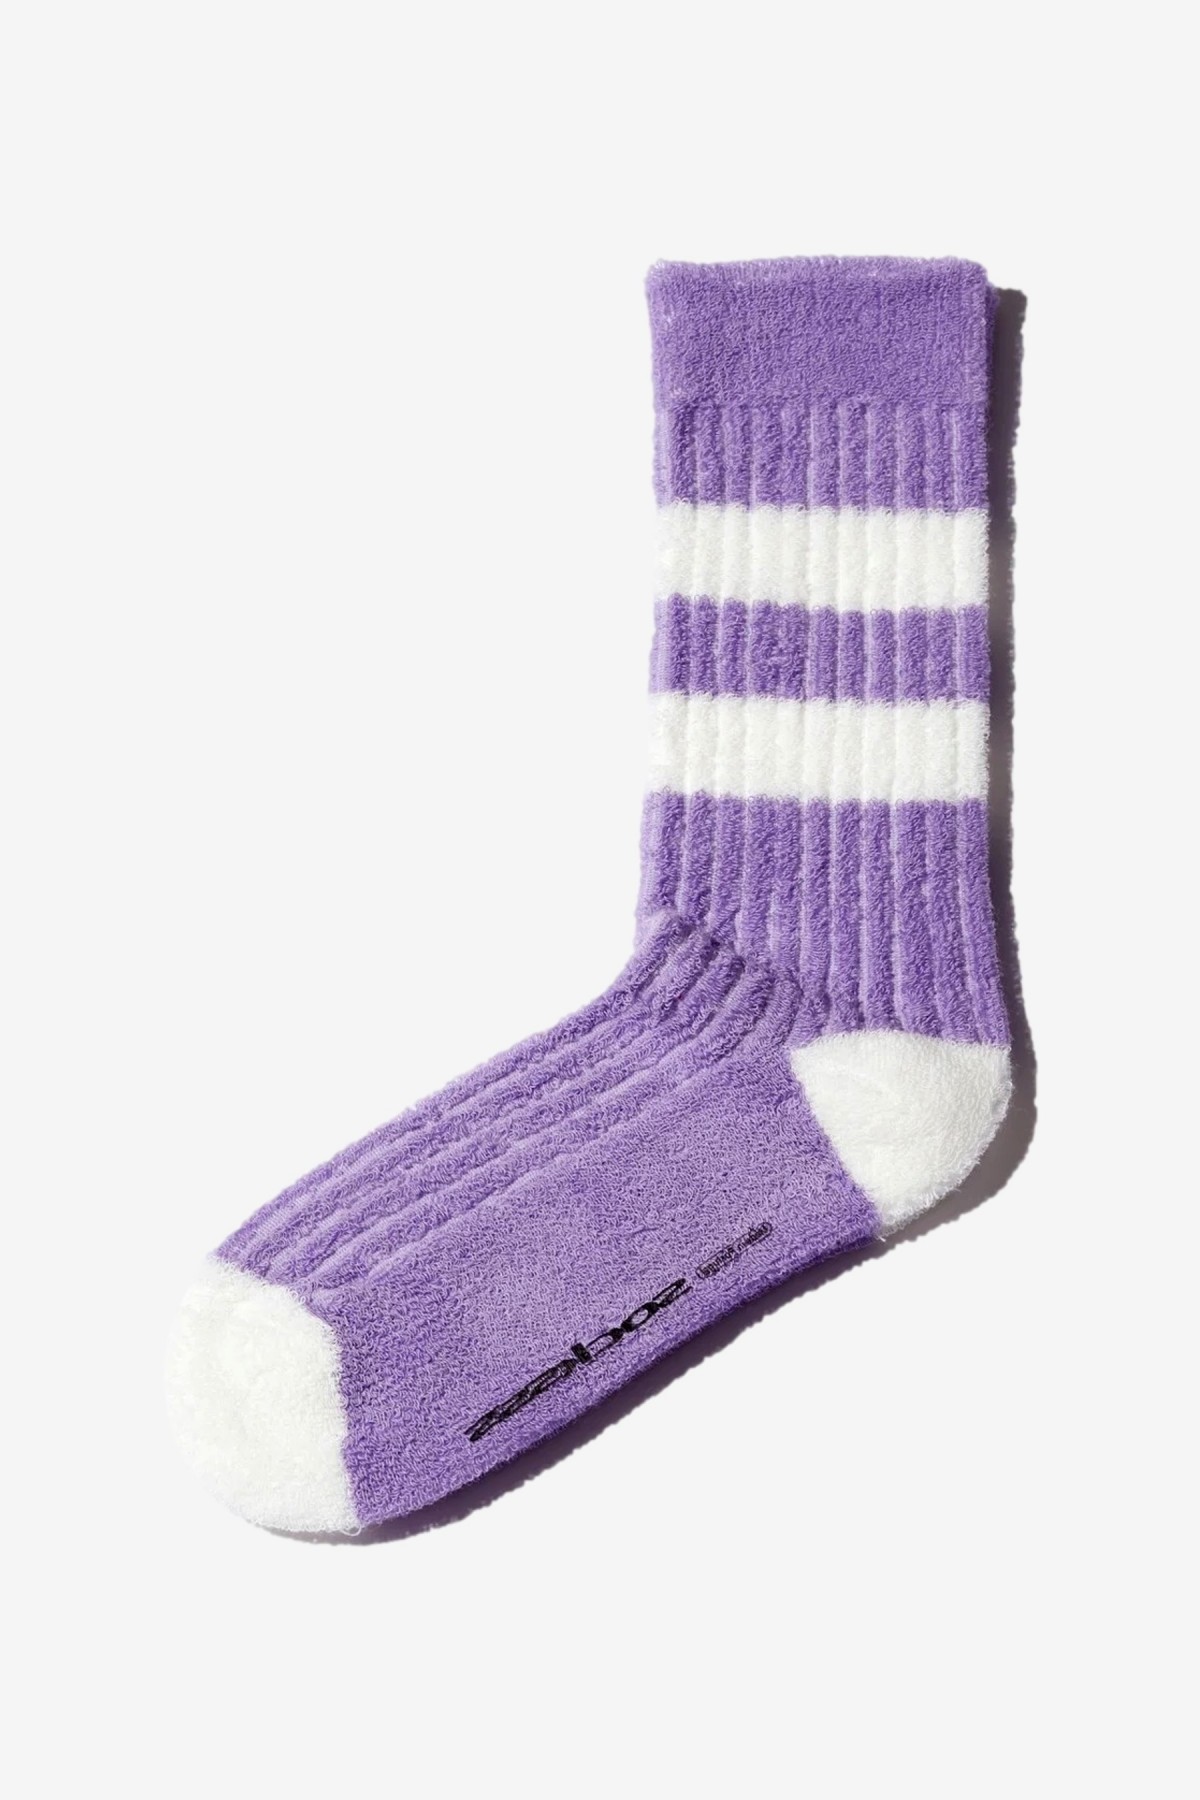 SOCKSSS Socksss in Towelie